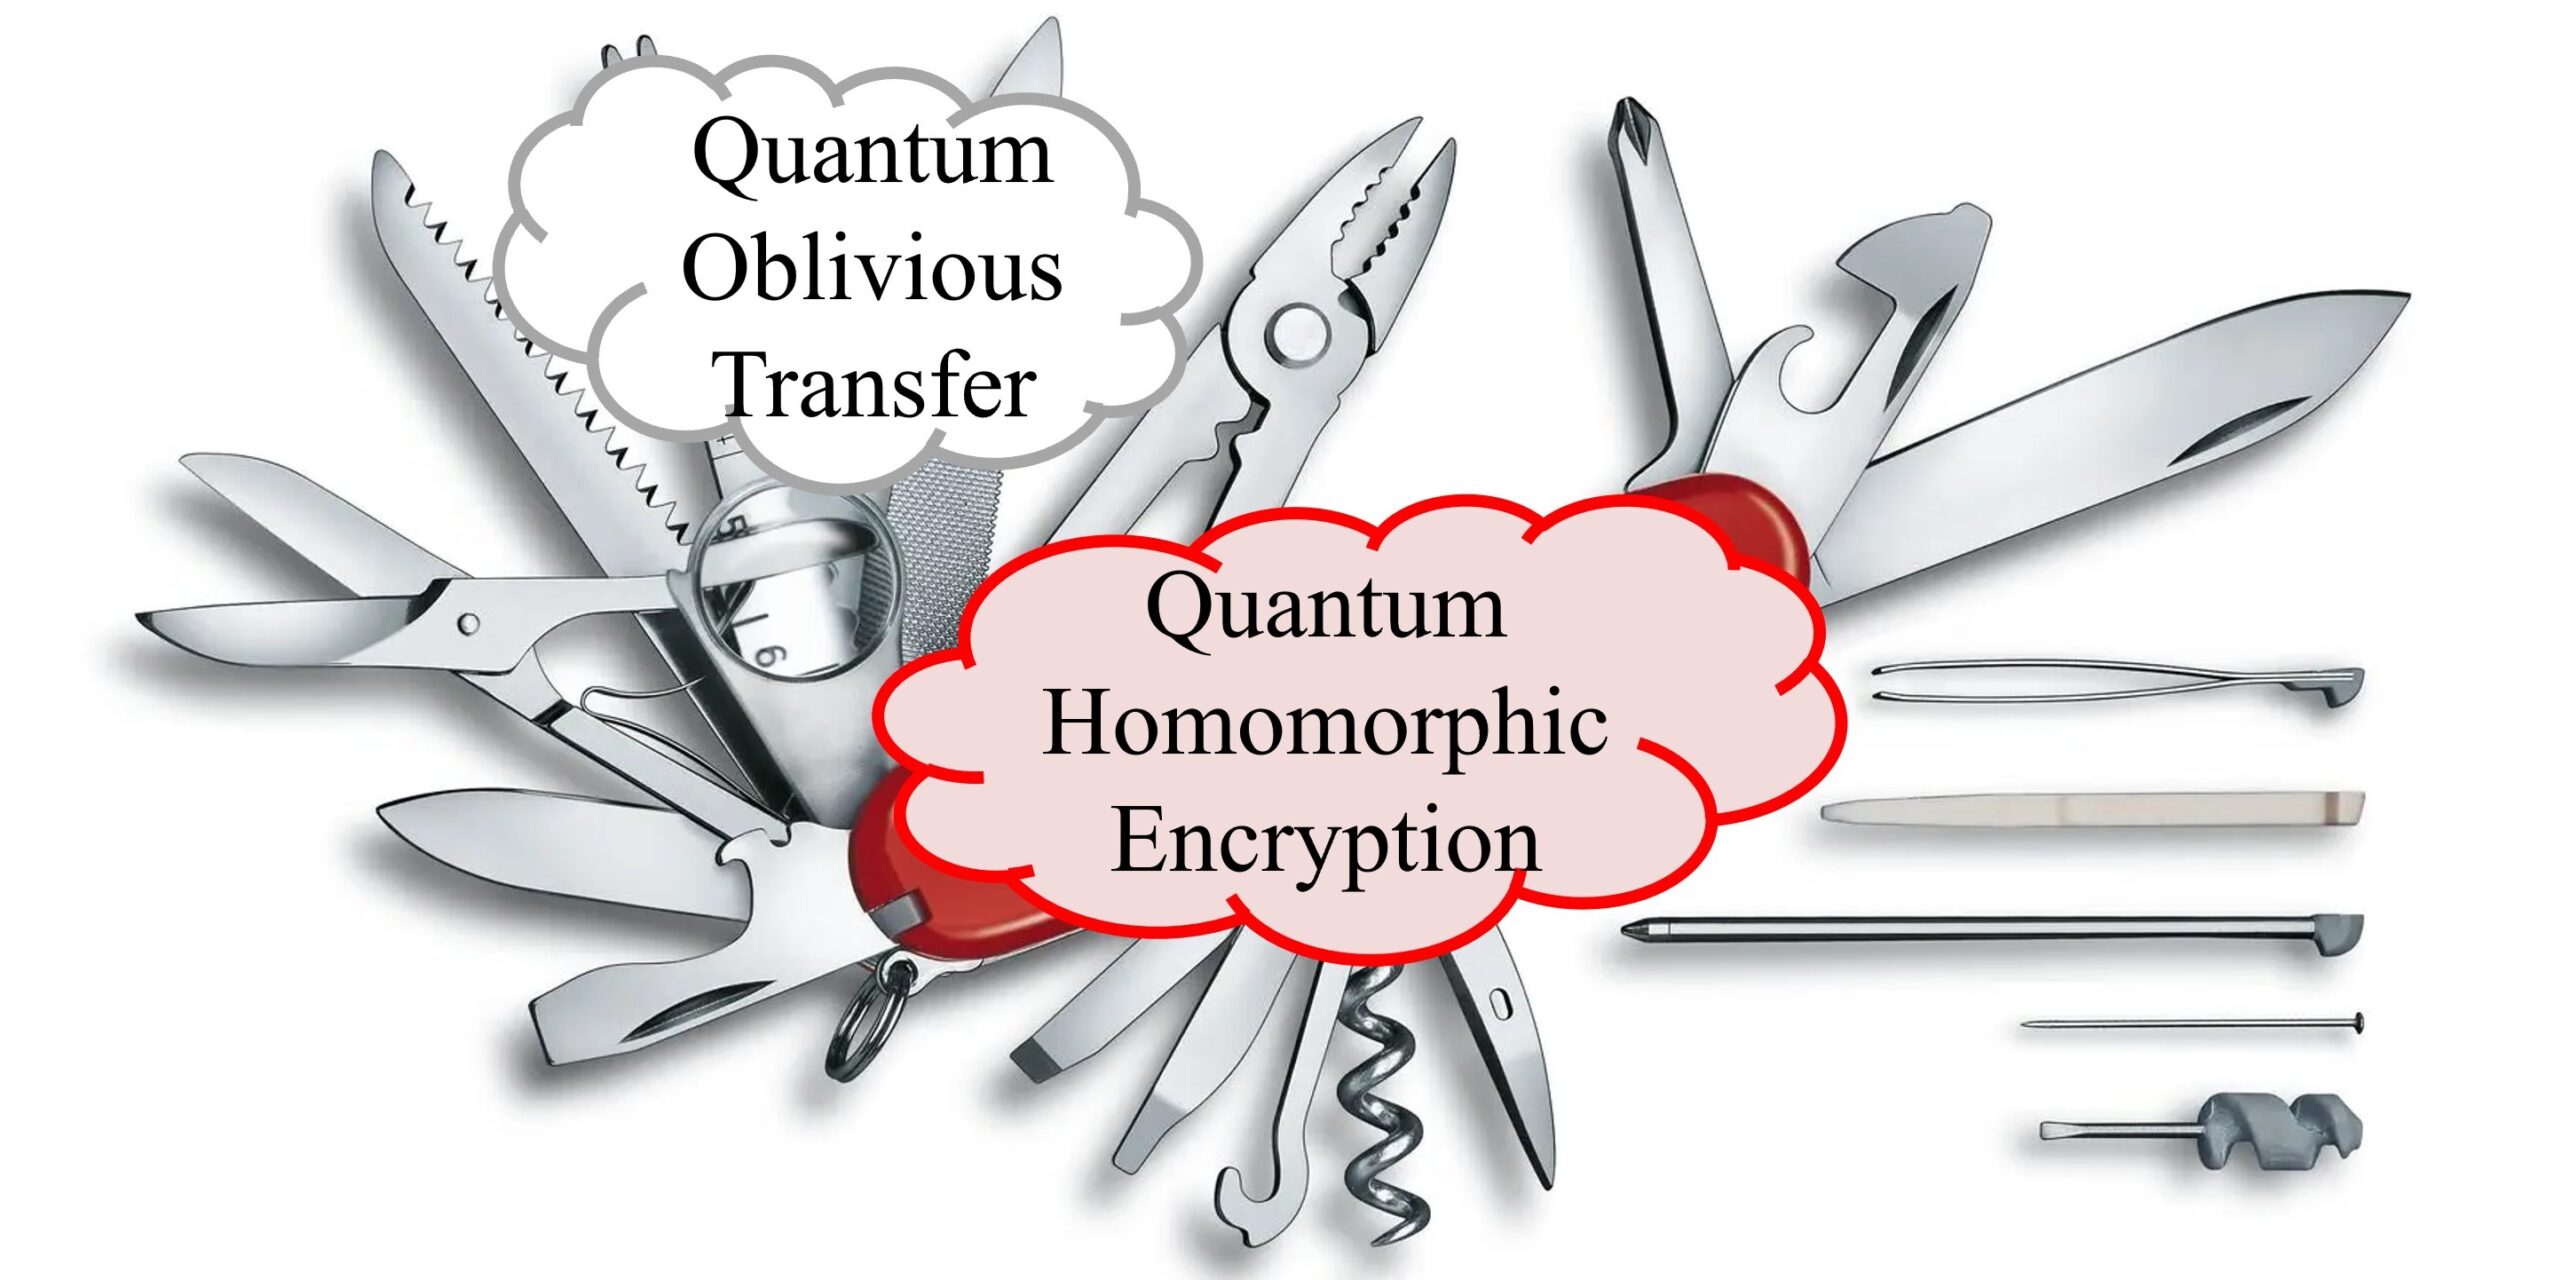 信息理论上安全的量子同态加密的隐私和正确性权衡